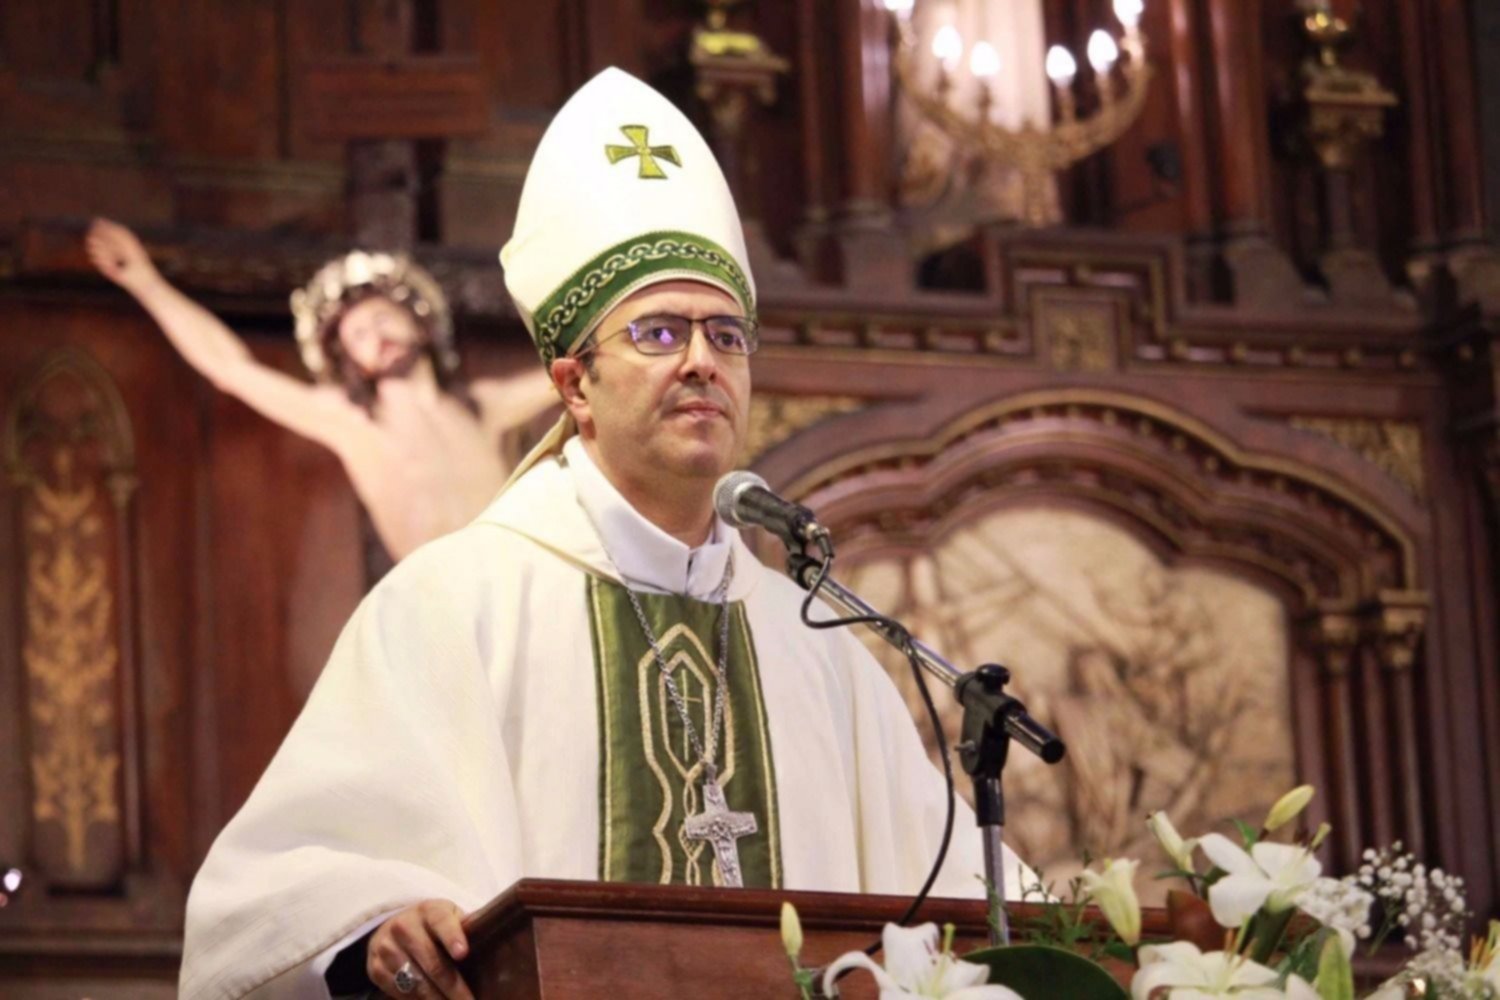 El obispo de Mar del Plata dará misas vía streaming